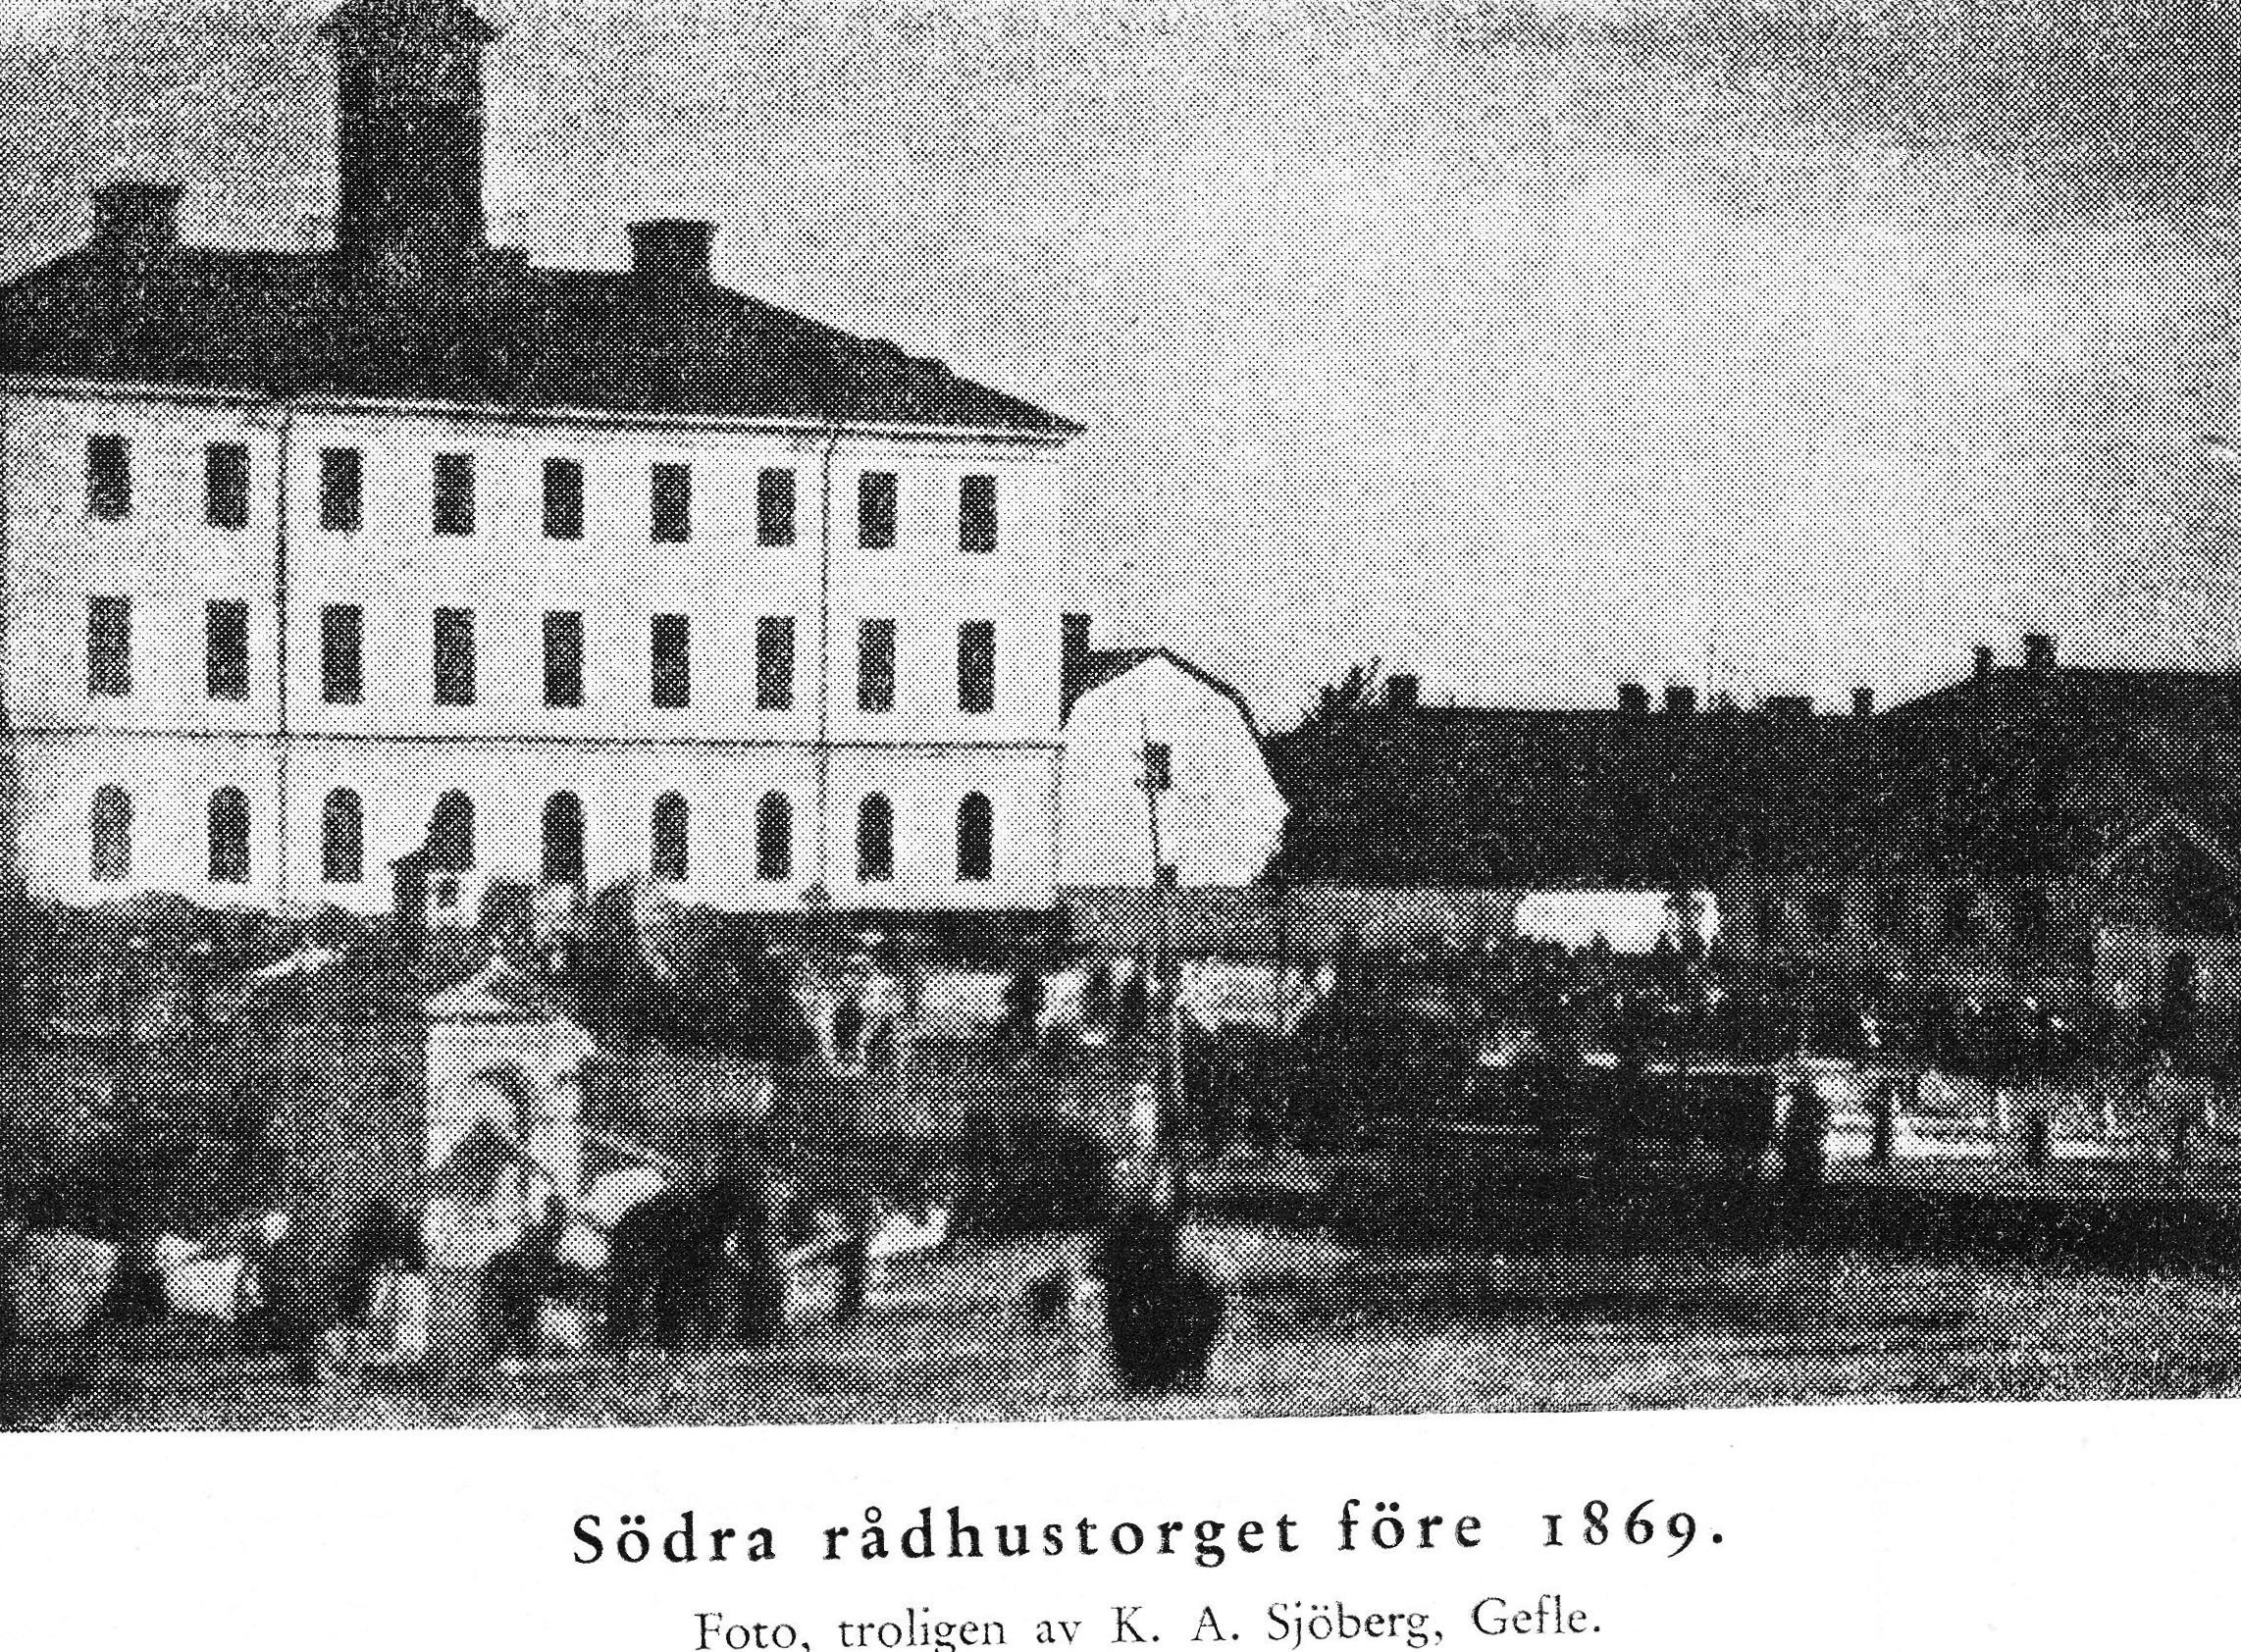 Södra sidan av rådhuset före branden 1869